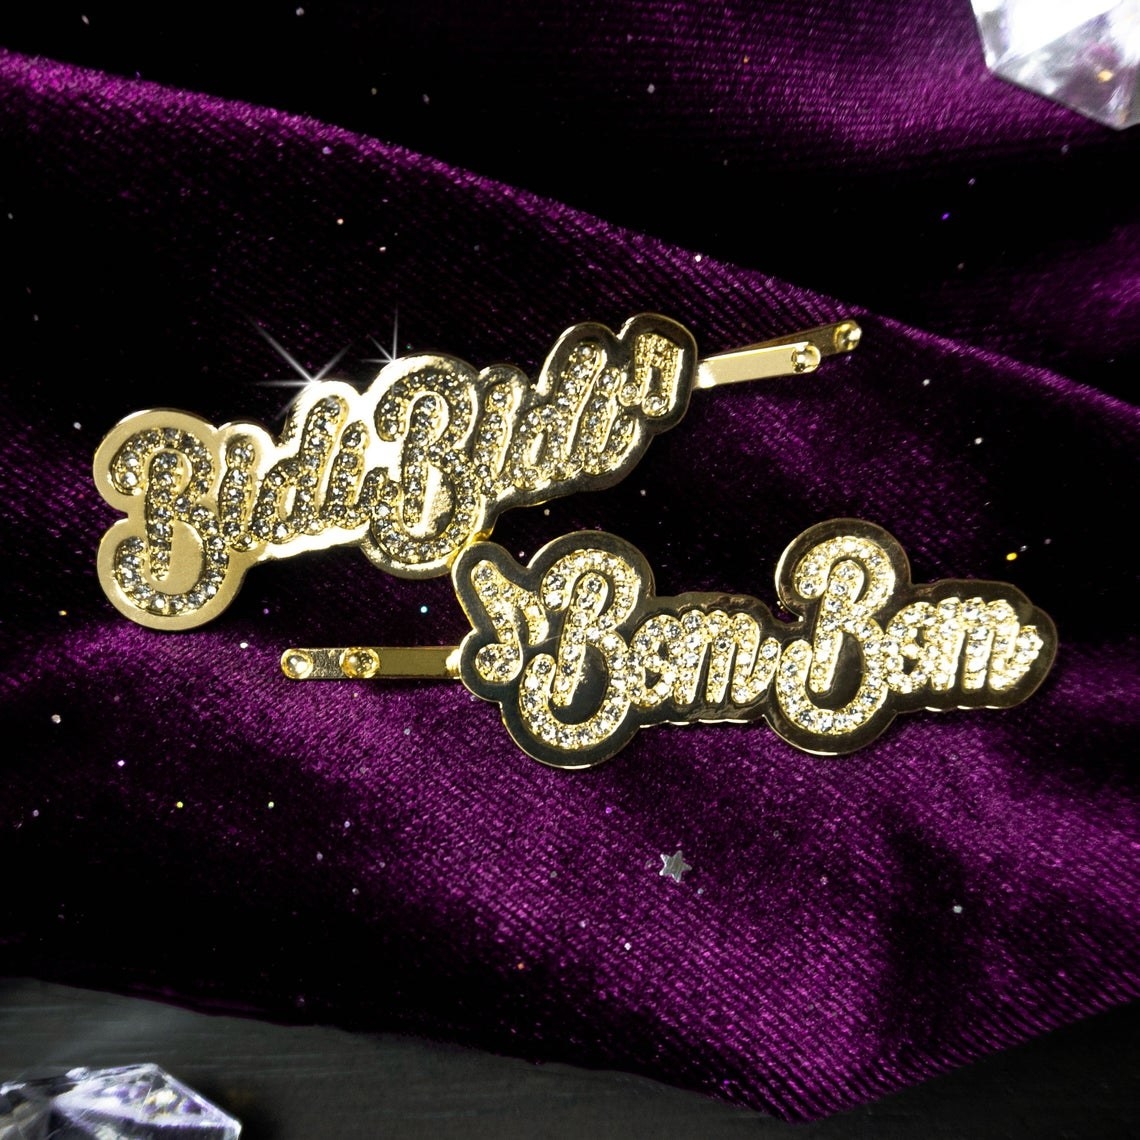 The Bidi Bidi Bom Bom Bobby Pin set in gold